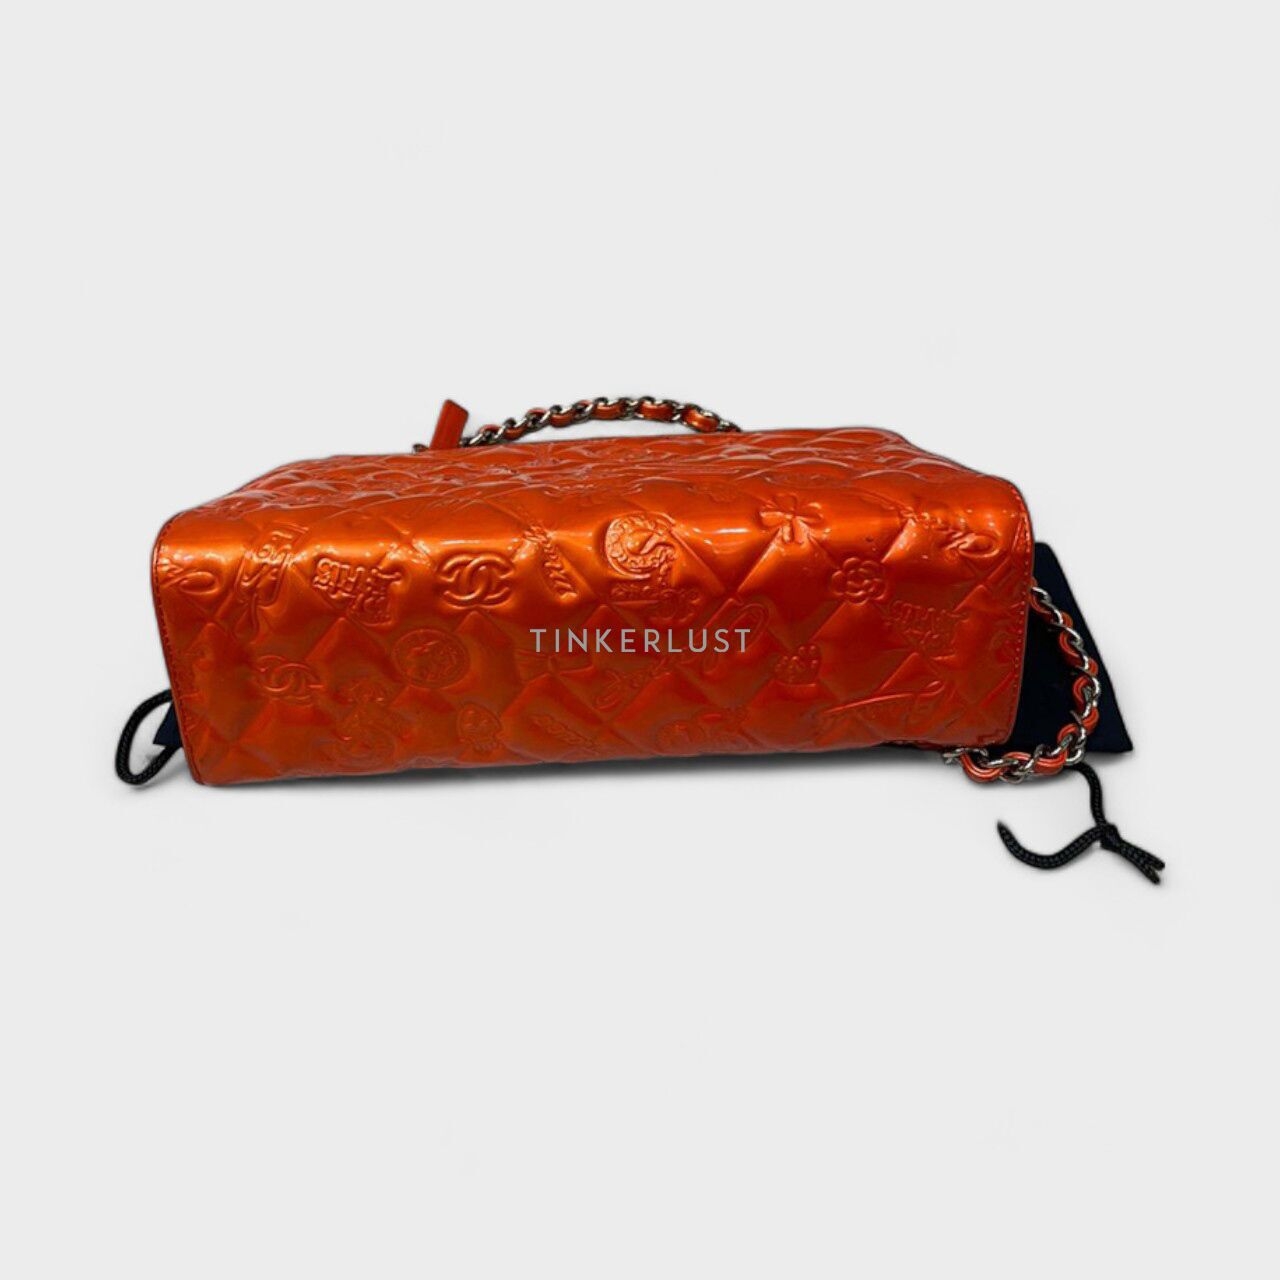 Chanel Orange Patent Leather #11 SHW Shoulder Bag